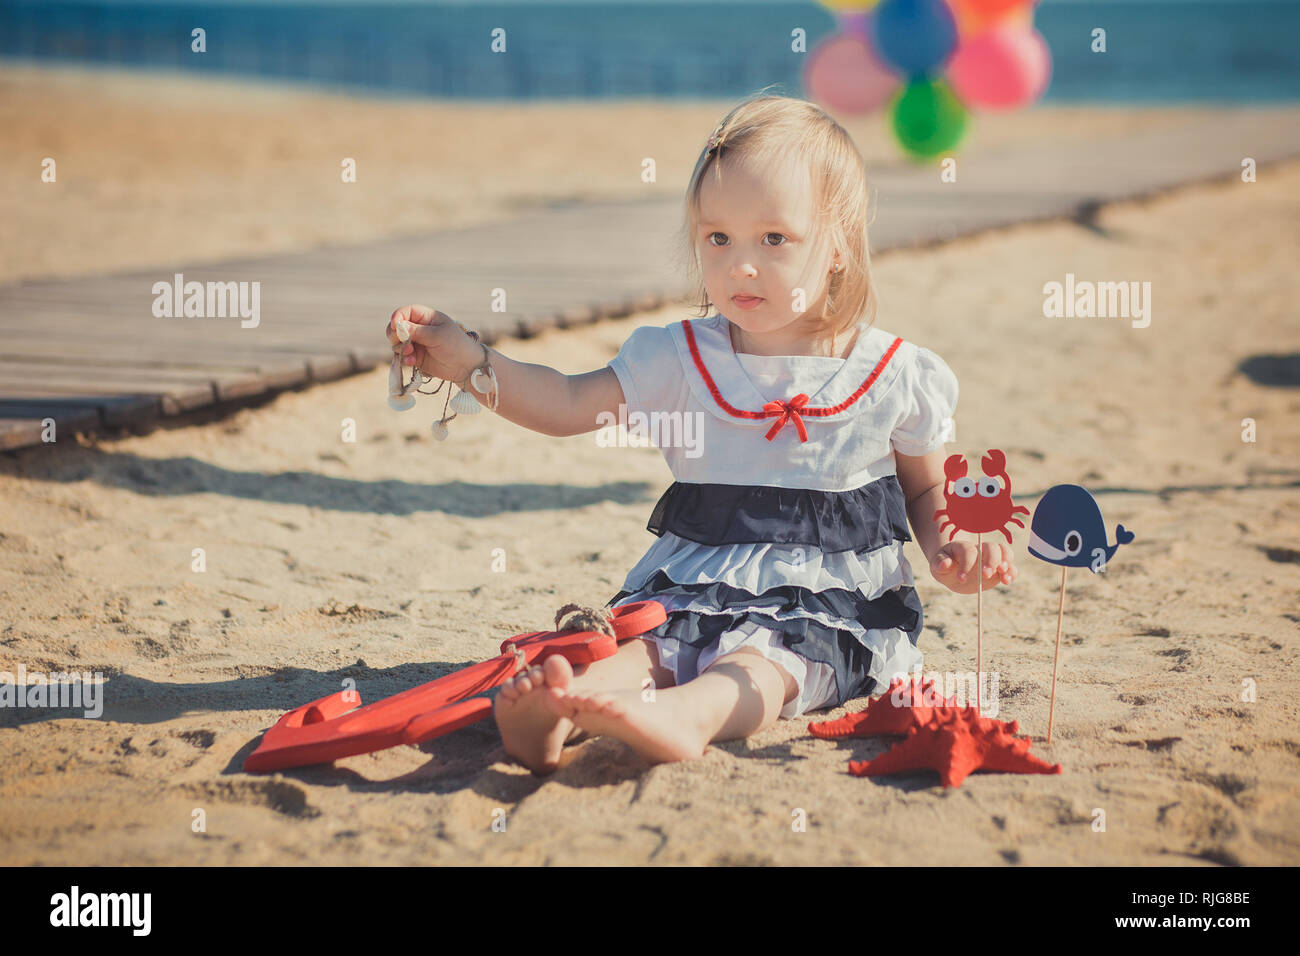 Bébé Enfant fille Cute blonde posing bénéficiant de temps de la vie d'été  sur la plage de sable de la mer sur la jetée en bois colorés avec beaucoup  de ballons portant